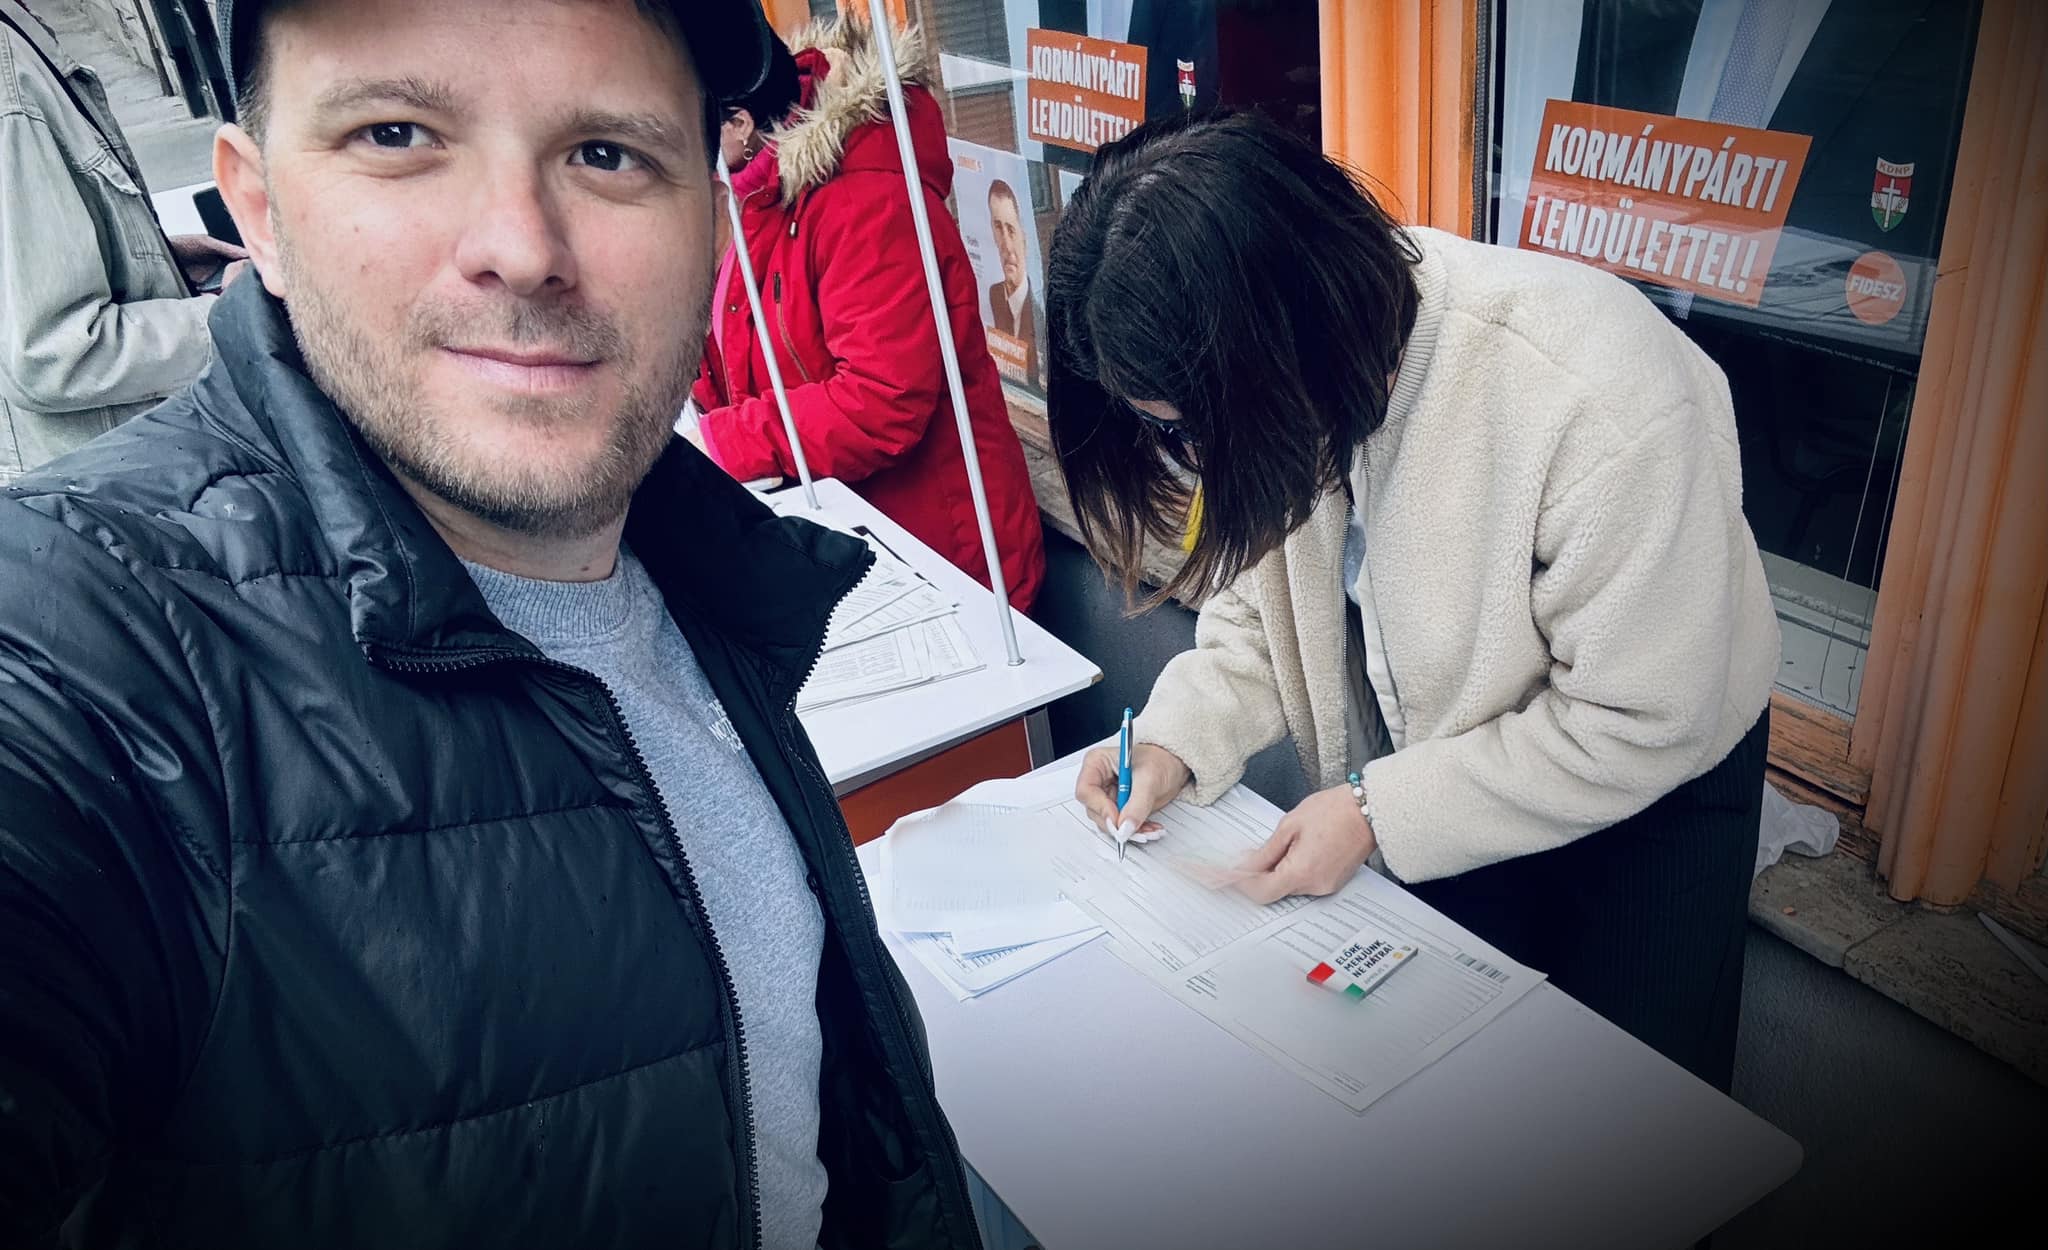 Bohár Dániel szerint nem Magyar Péter, hanem a Fidesz gyűjtötte össze előbb a 20 ezer aláírást, de a kommentelők egy része lehazugozta